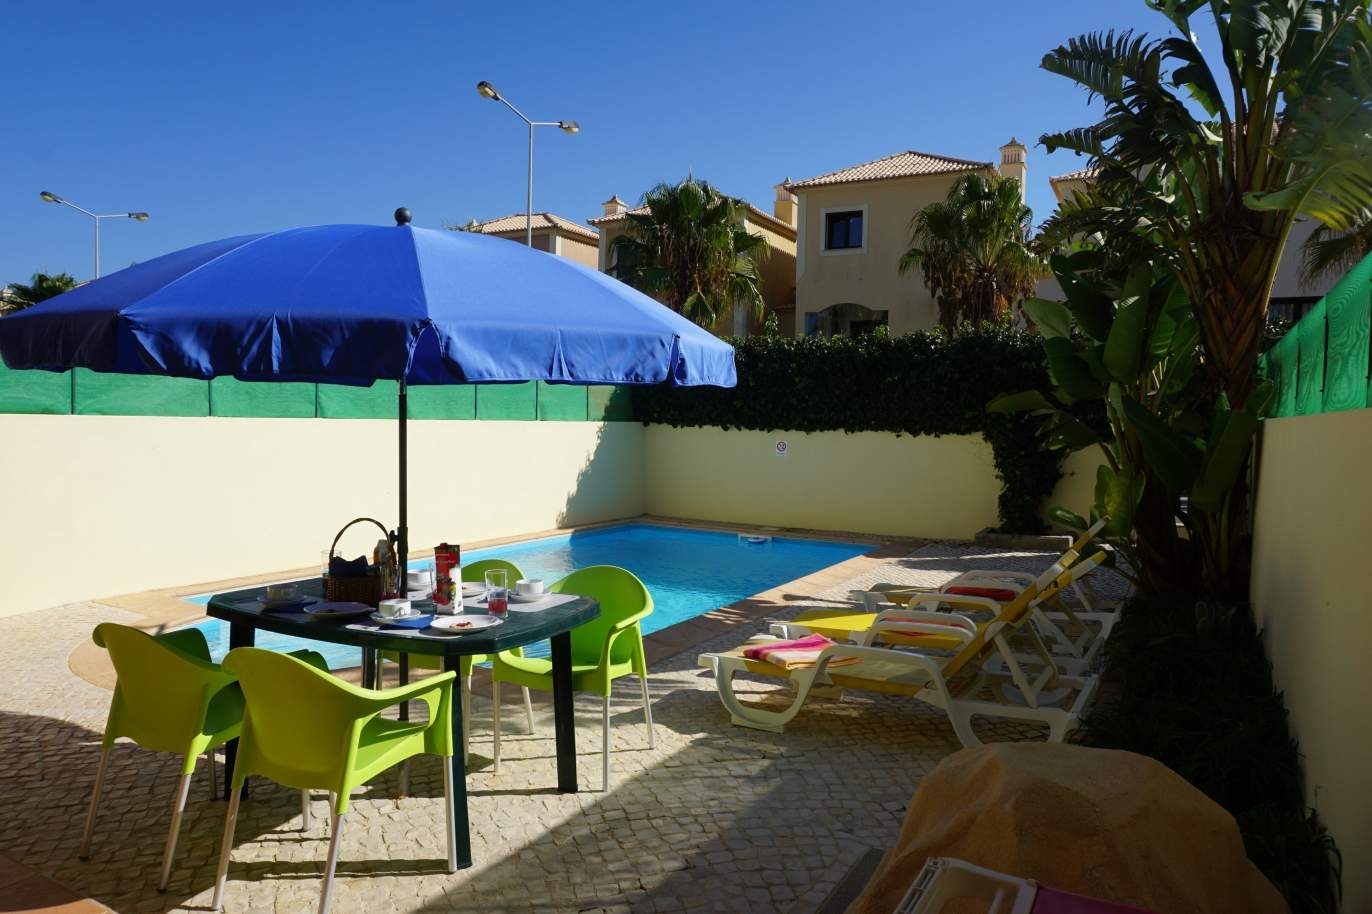 Venda de moradia com piscina, Budens,Vila do Bispo, Algarve, Portugal_117782